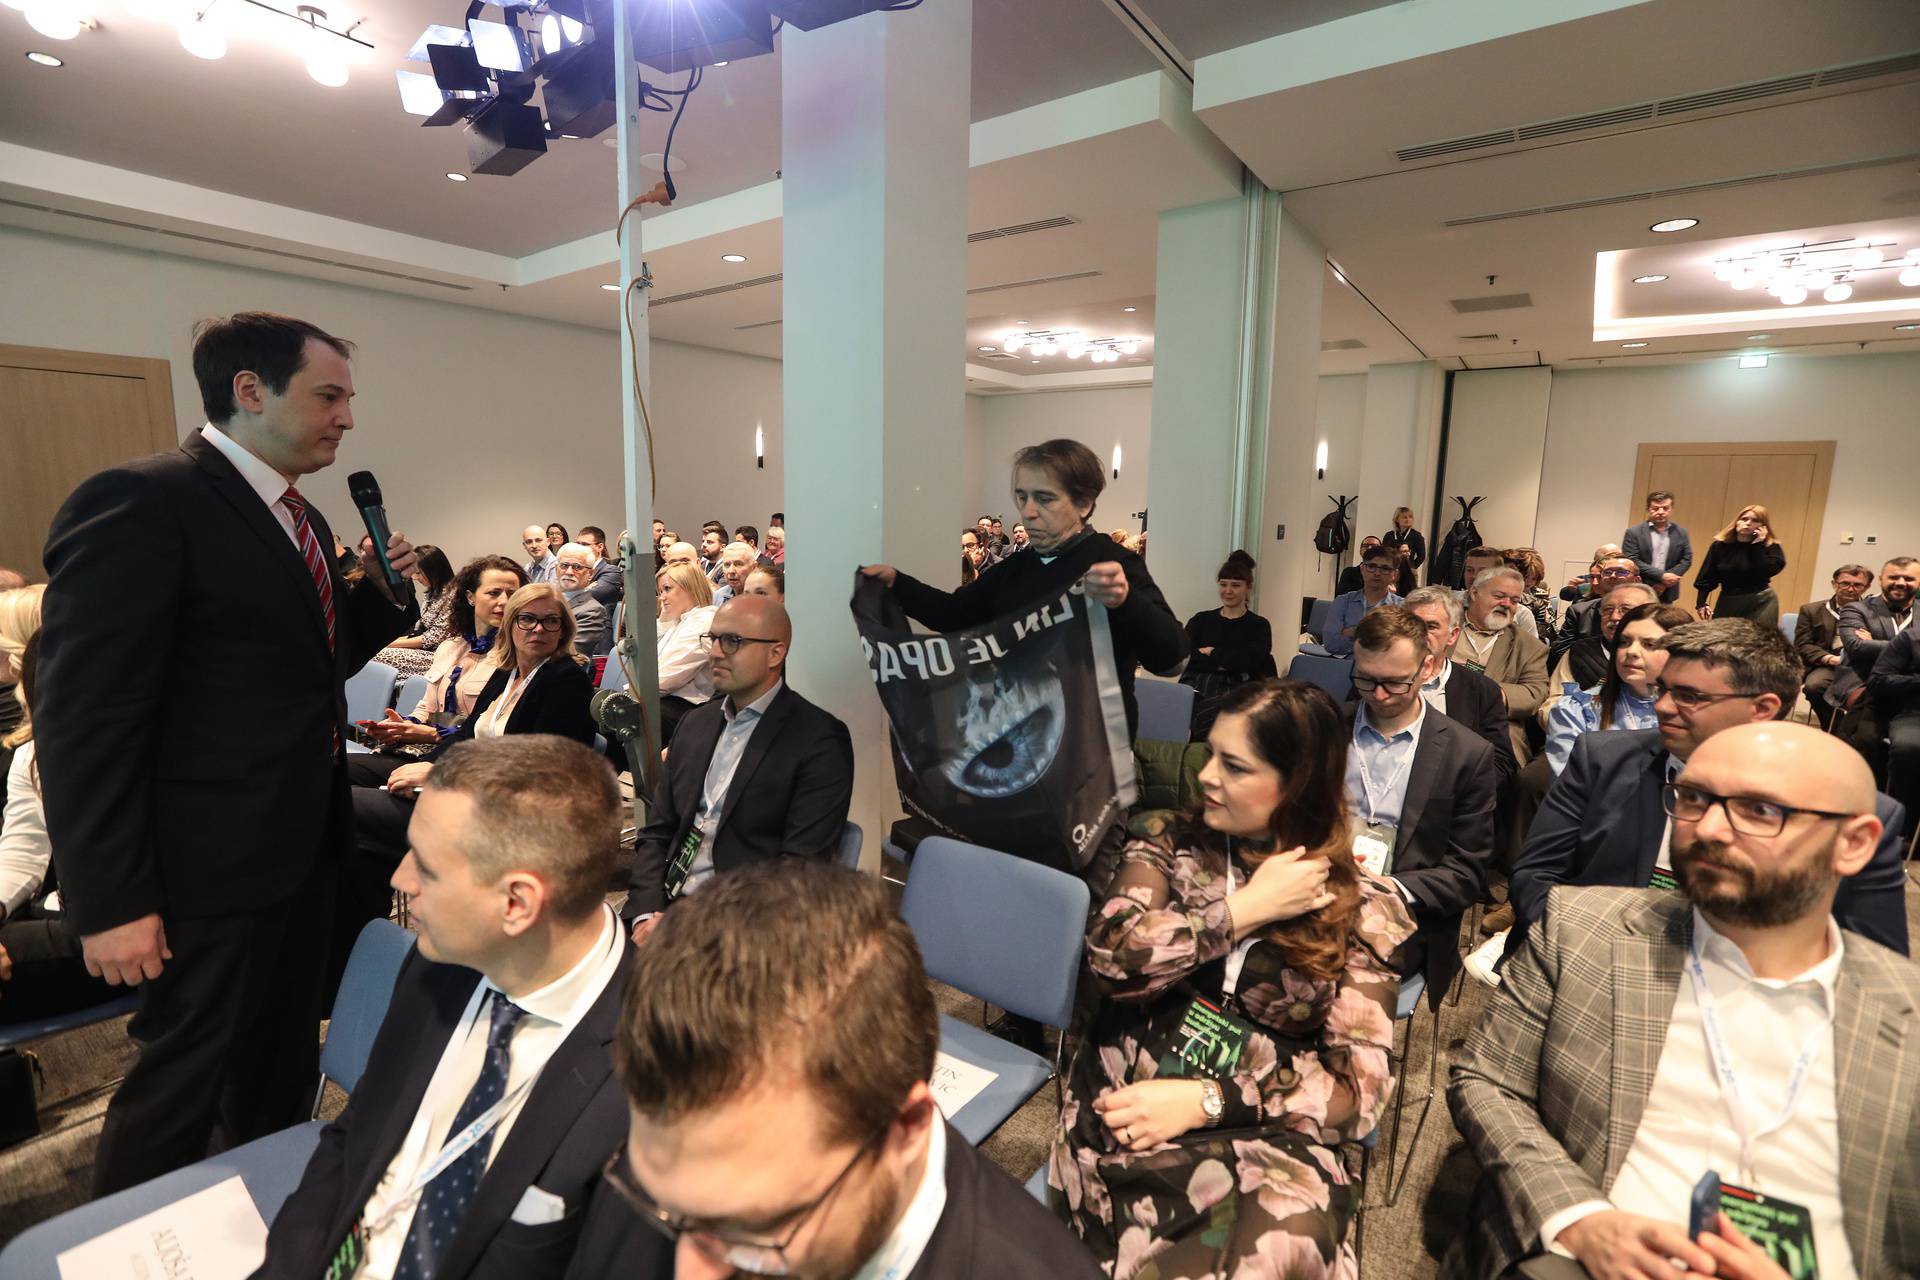 Zagreb: Prosvjednici prekinuli energetsku konferenciju Poslovnog dnevnika "Energetski put u održivu budućnost"